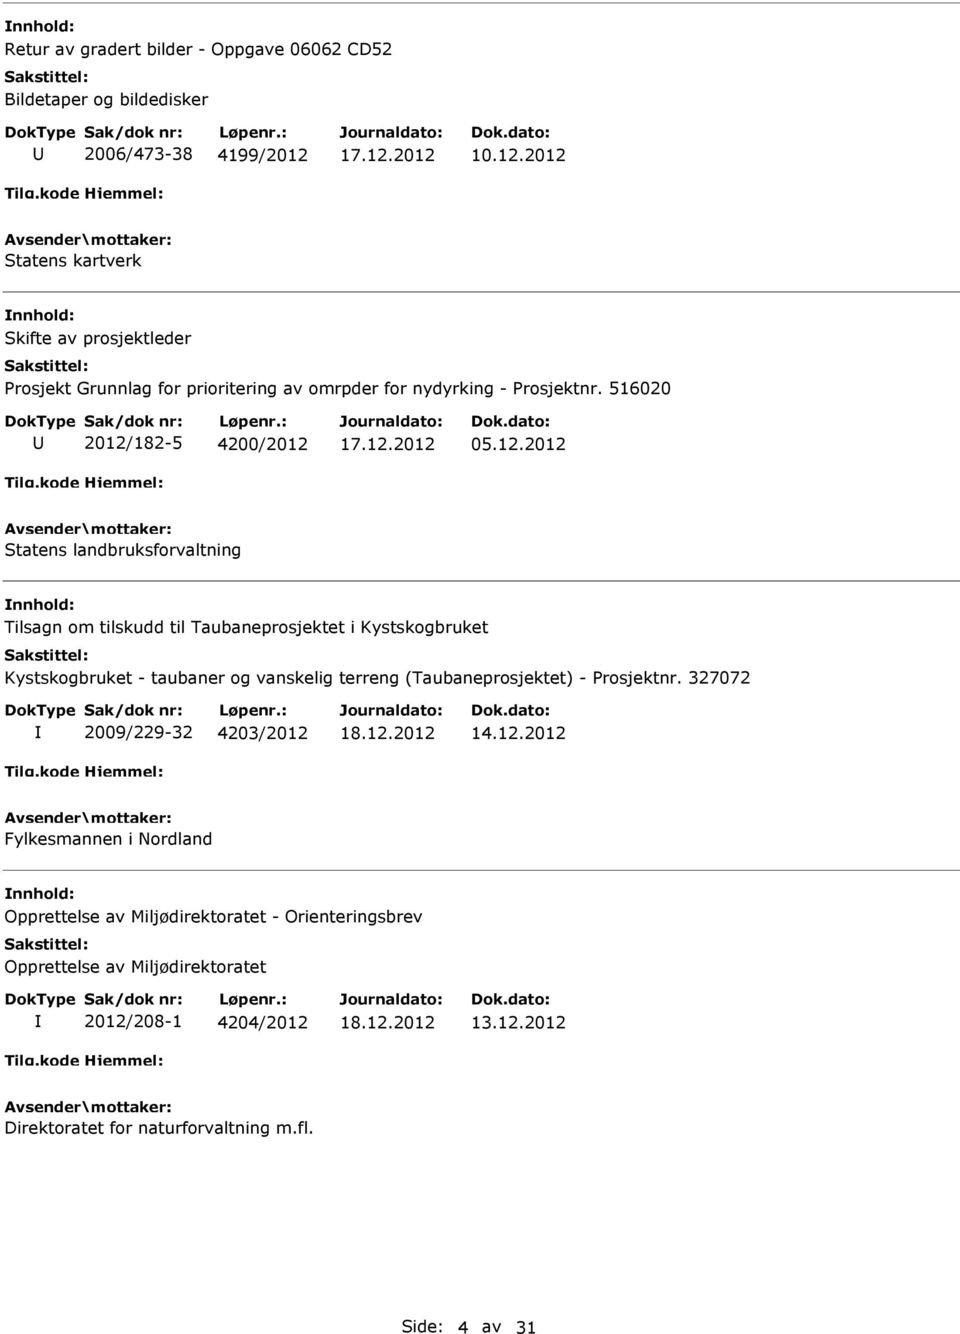 2012 Statens kartverk Skifte av prosjektleder Prosjekt Grunnlag for prioritering av omrpder for nydyrking - Prosjektnr. 516020 2012/182-5 4200/2012 05.12.2012